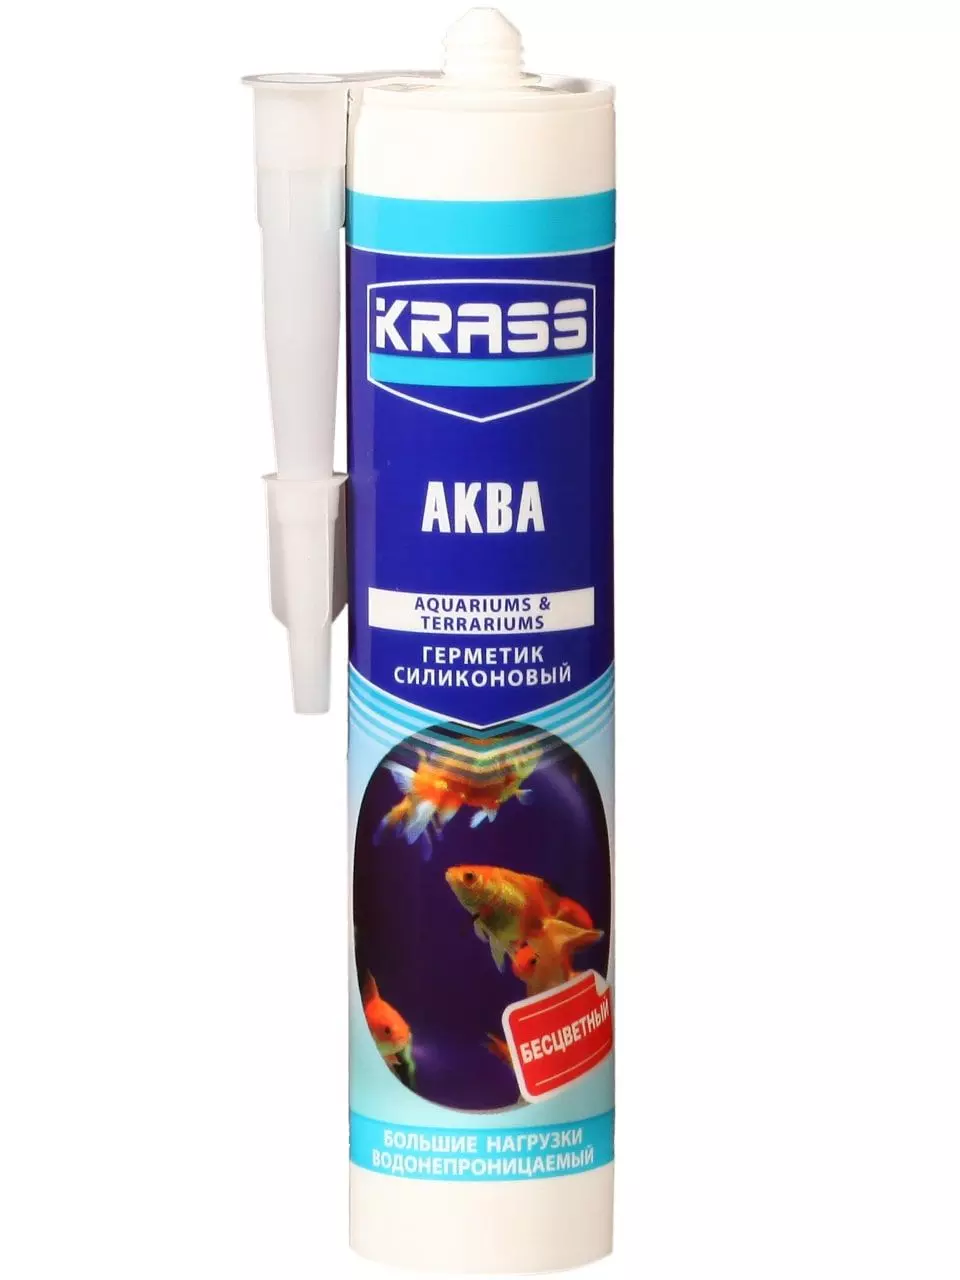 Герметик силиконовый KRASS для аквариумов (Аква) Бесцветный 300мл ЛС